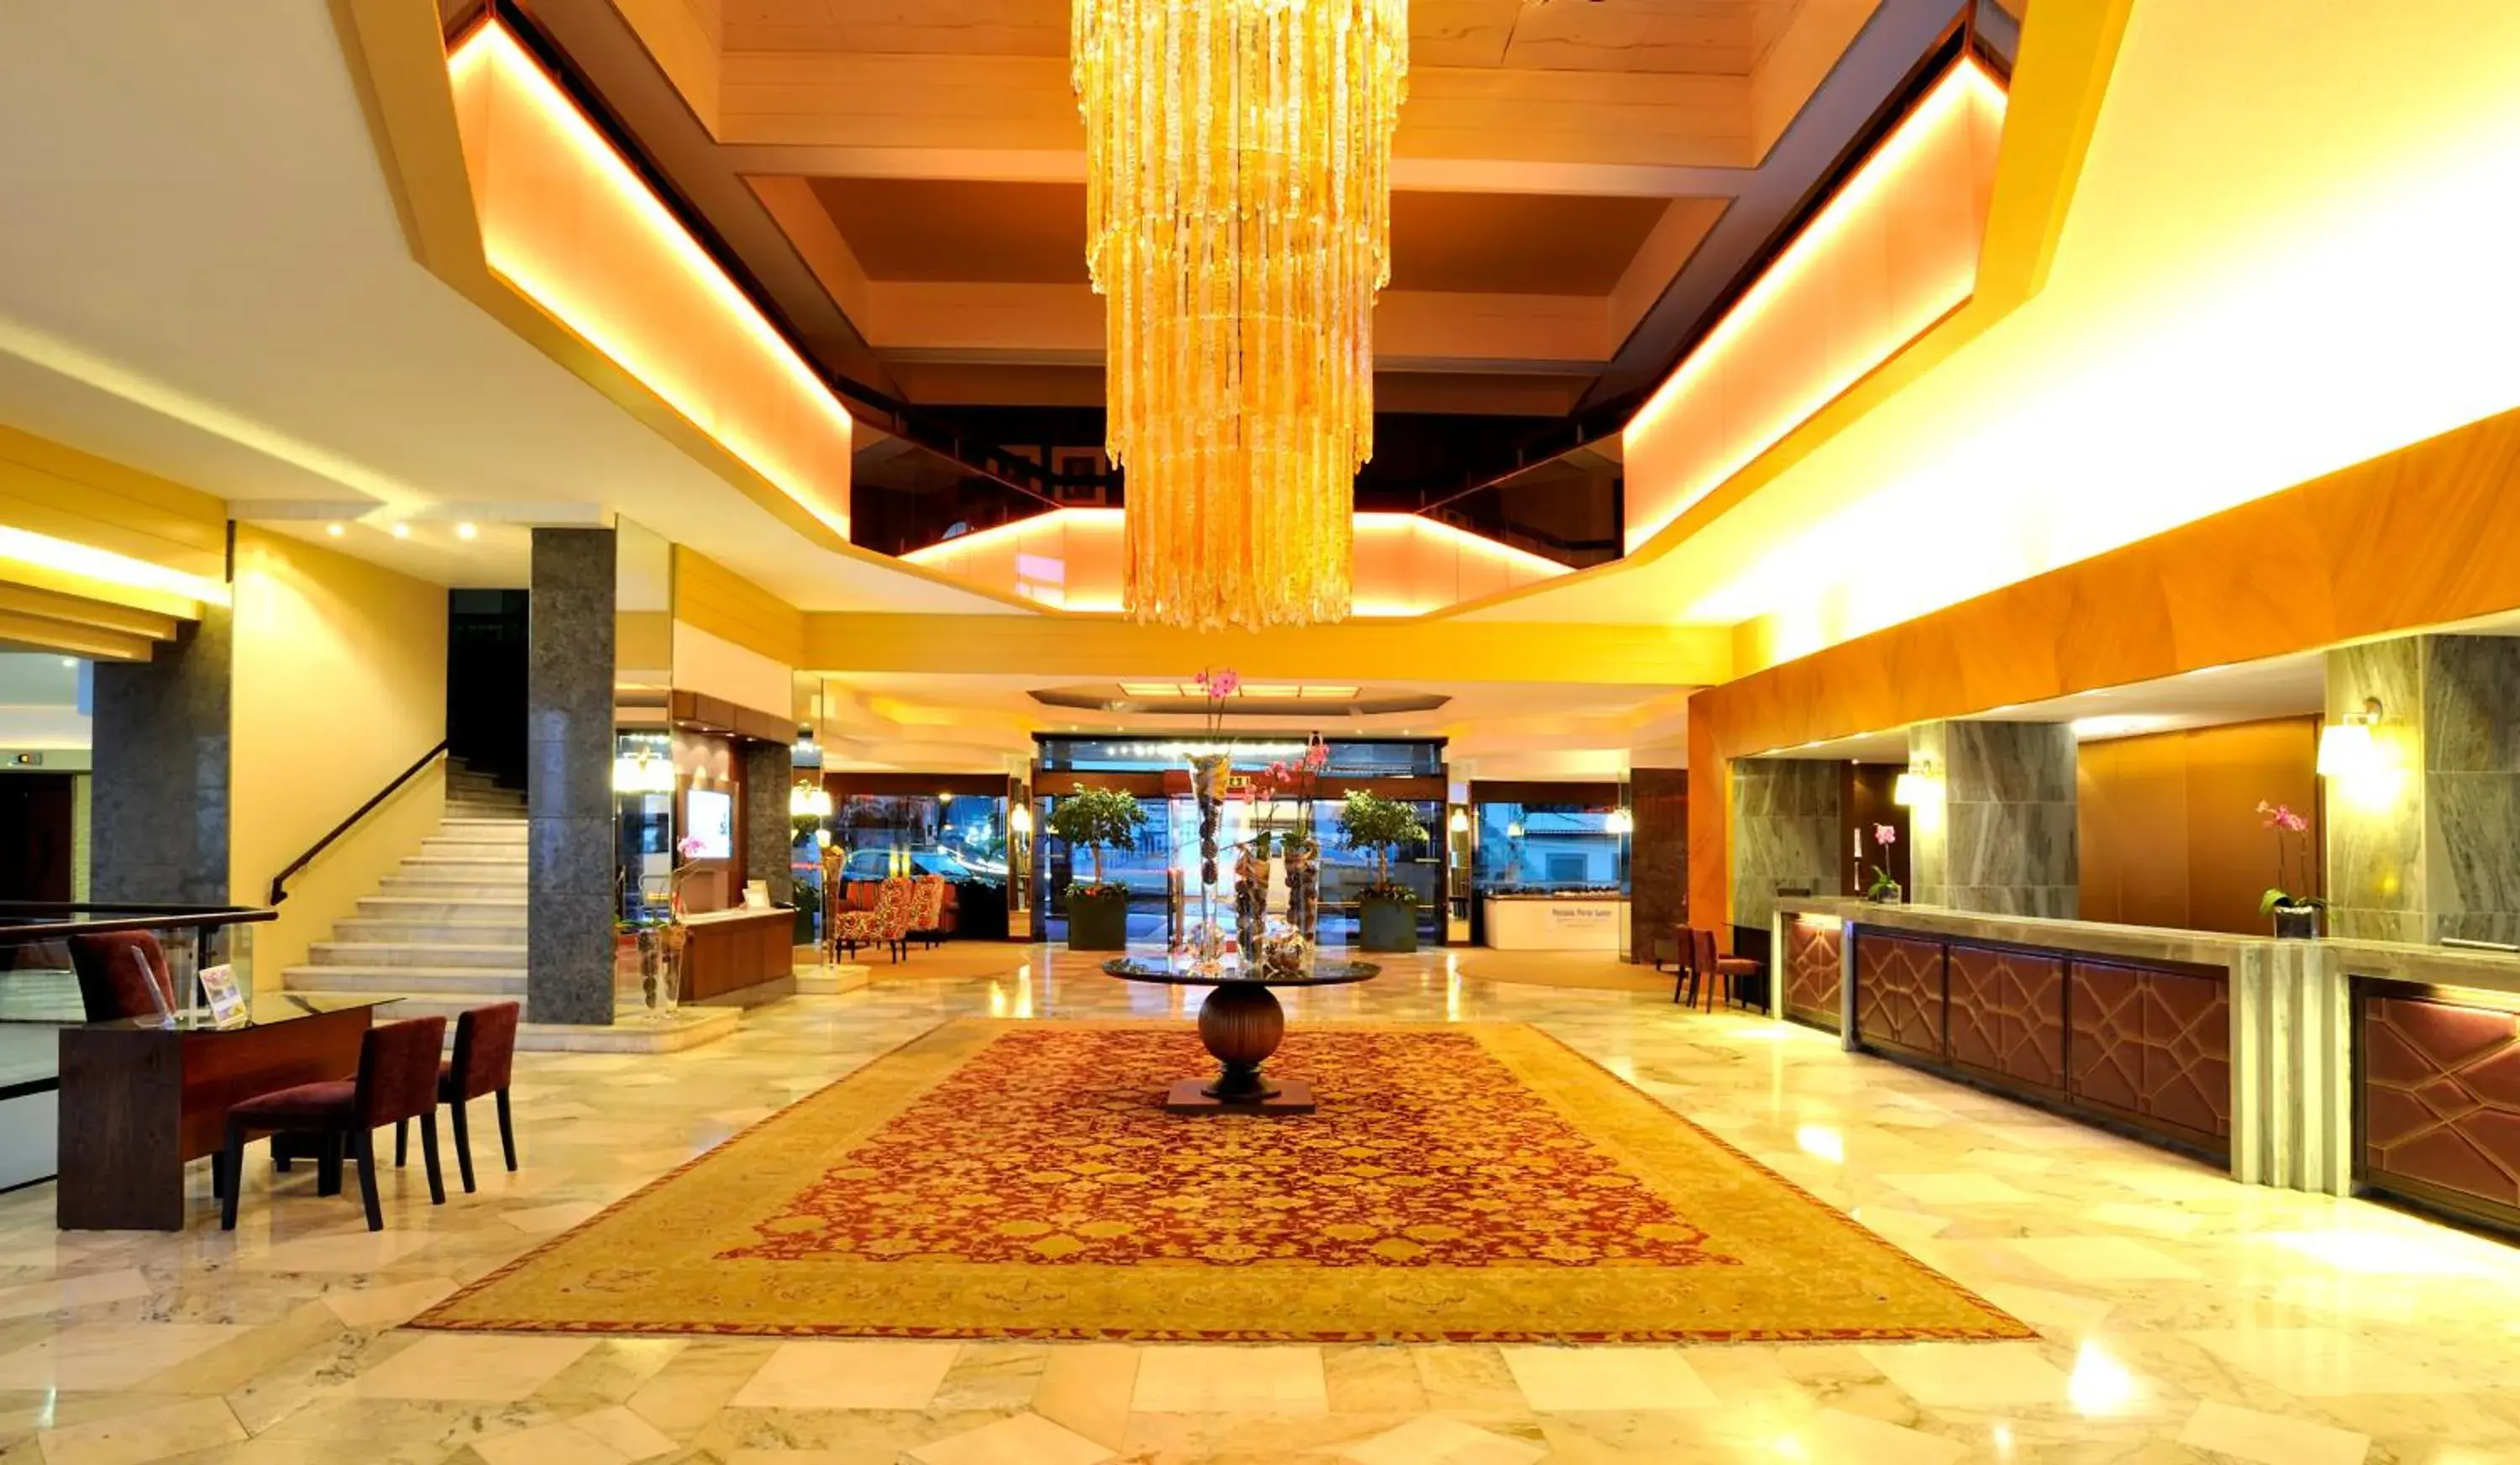 Lobby or reception in Pestana Carlton Madeira Ocean Resort Hotel